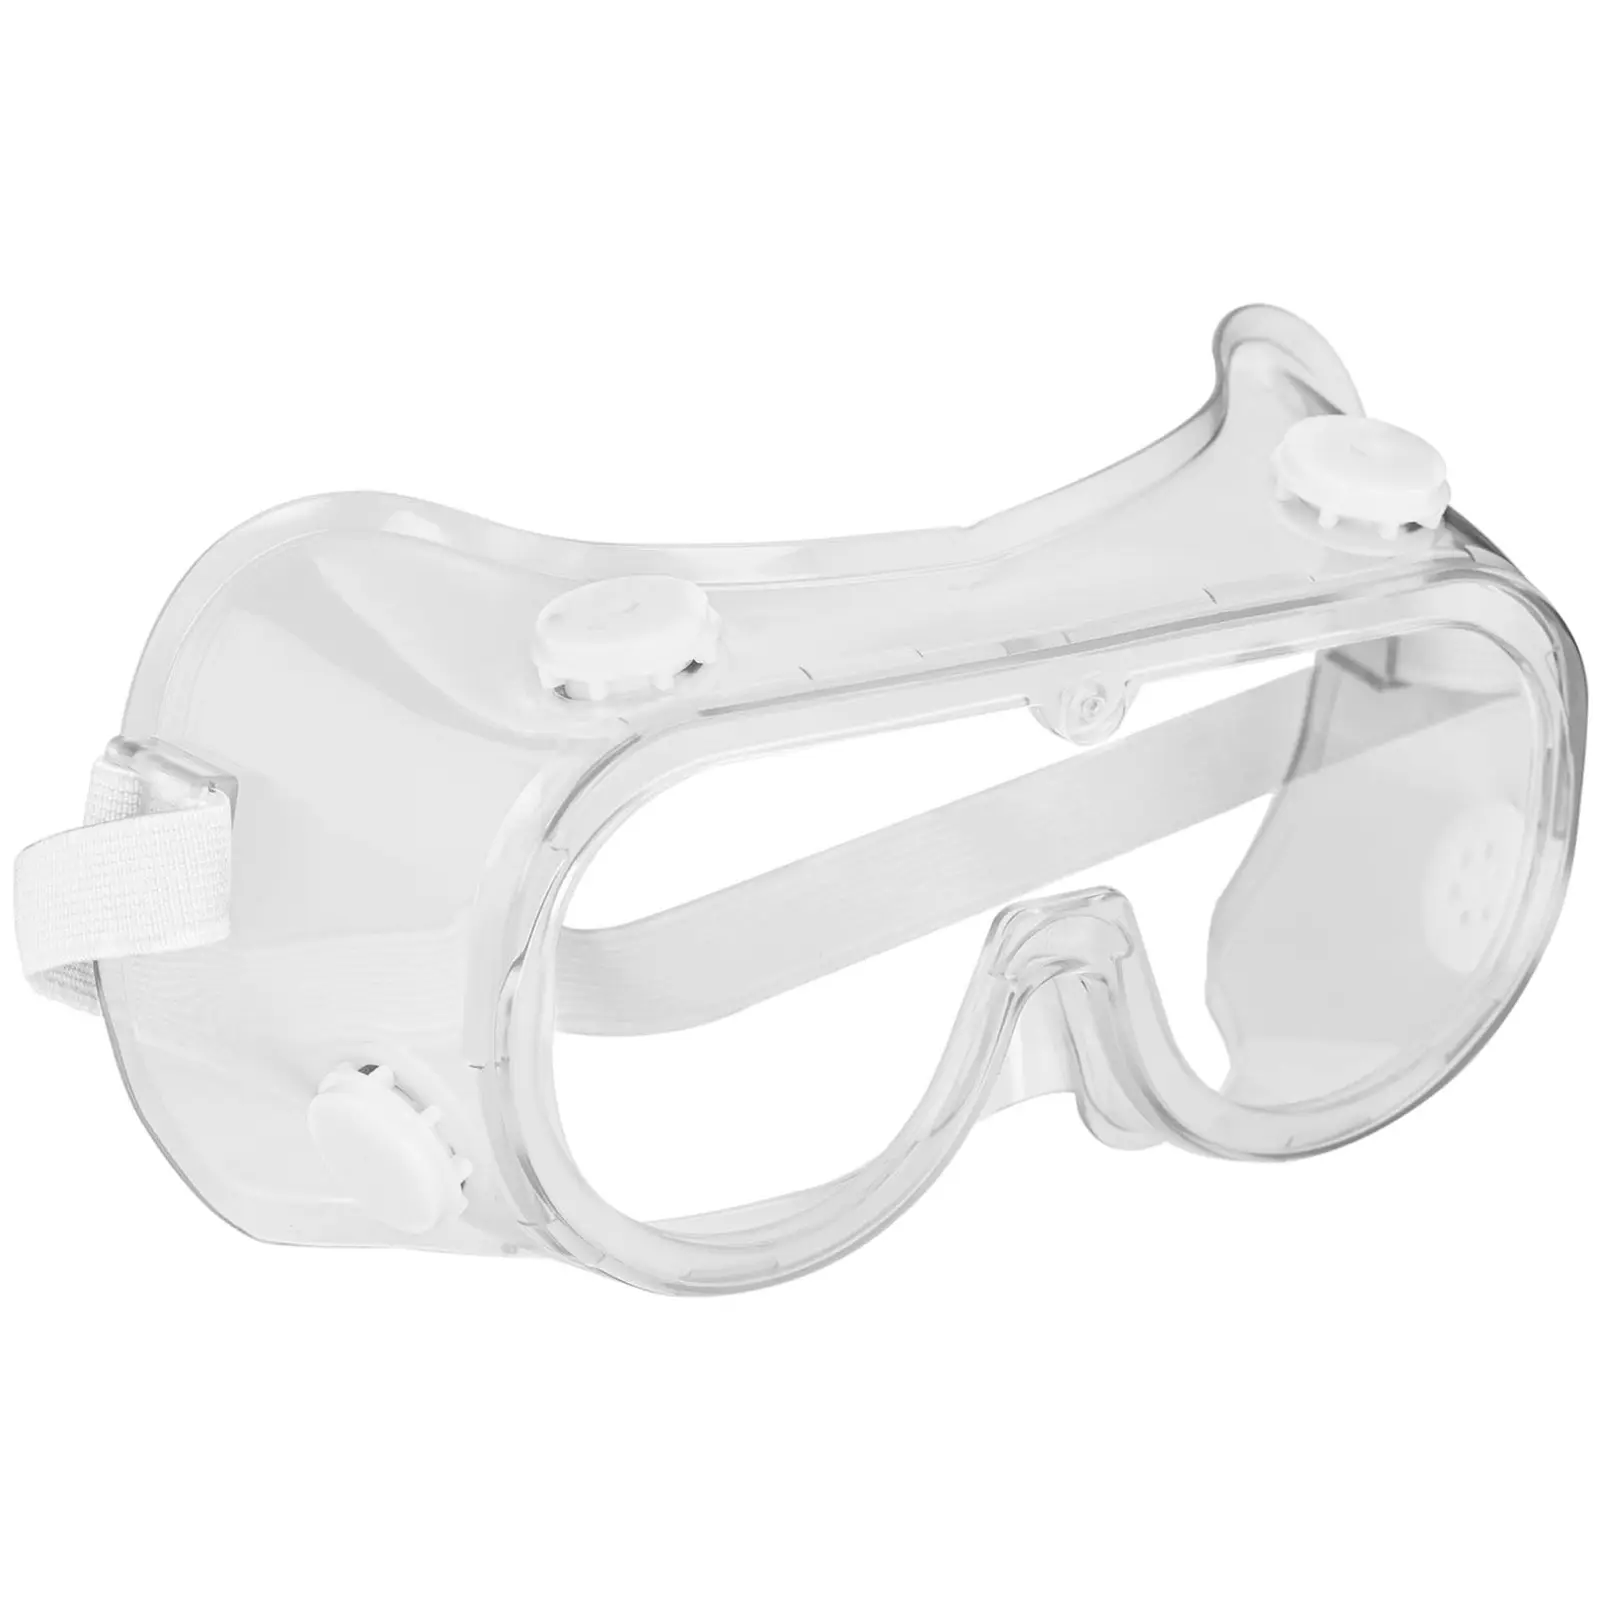 para niños Gafas Transparentes con protección anti niebla y protección y antiarañazos ultravioleta perfecta Gafas Protectoras para y sin gafas Pack de 3 Gafas de seguridad 